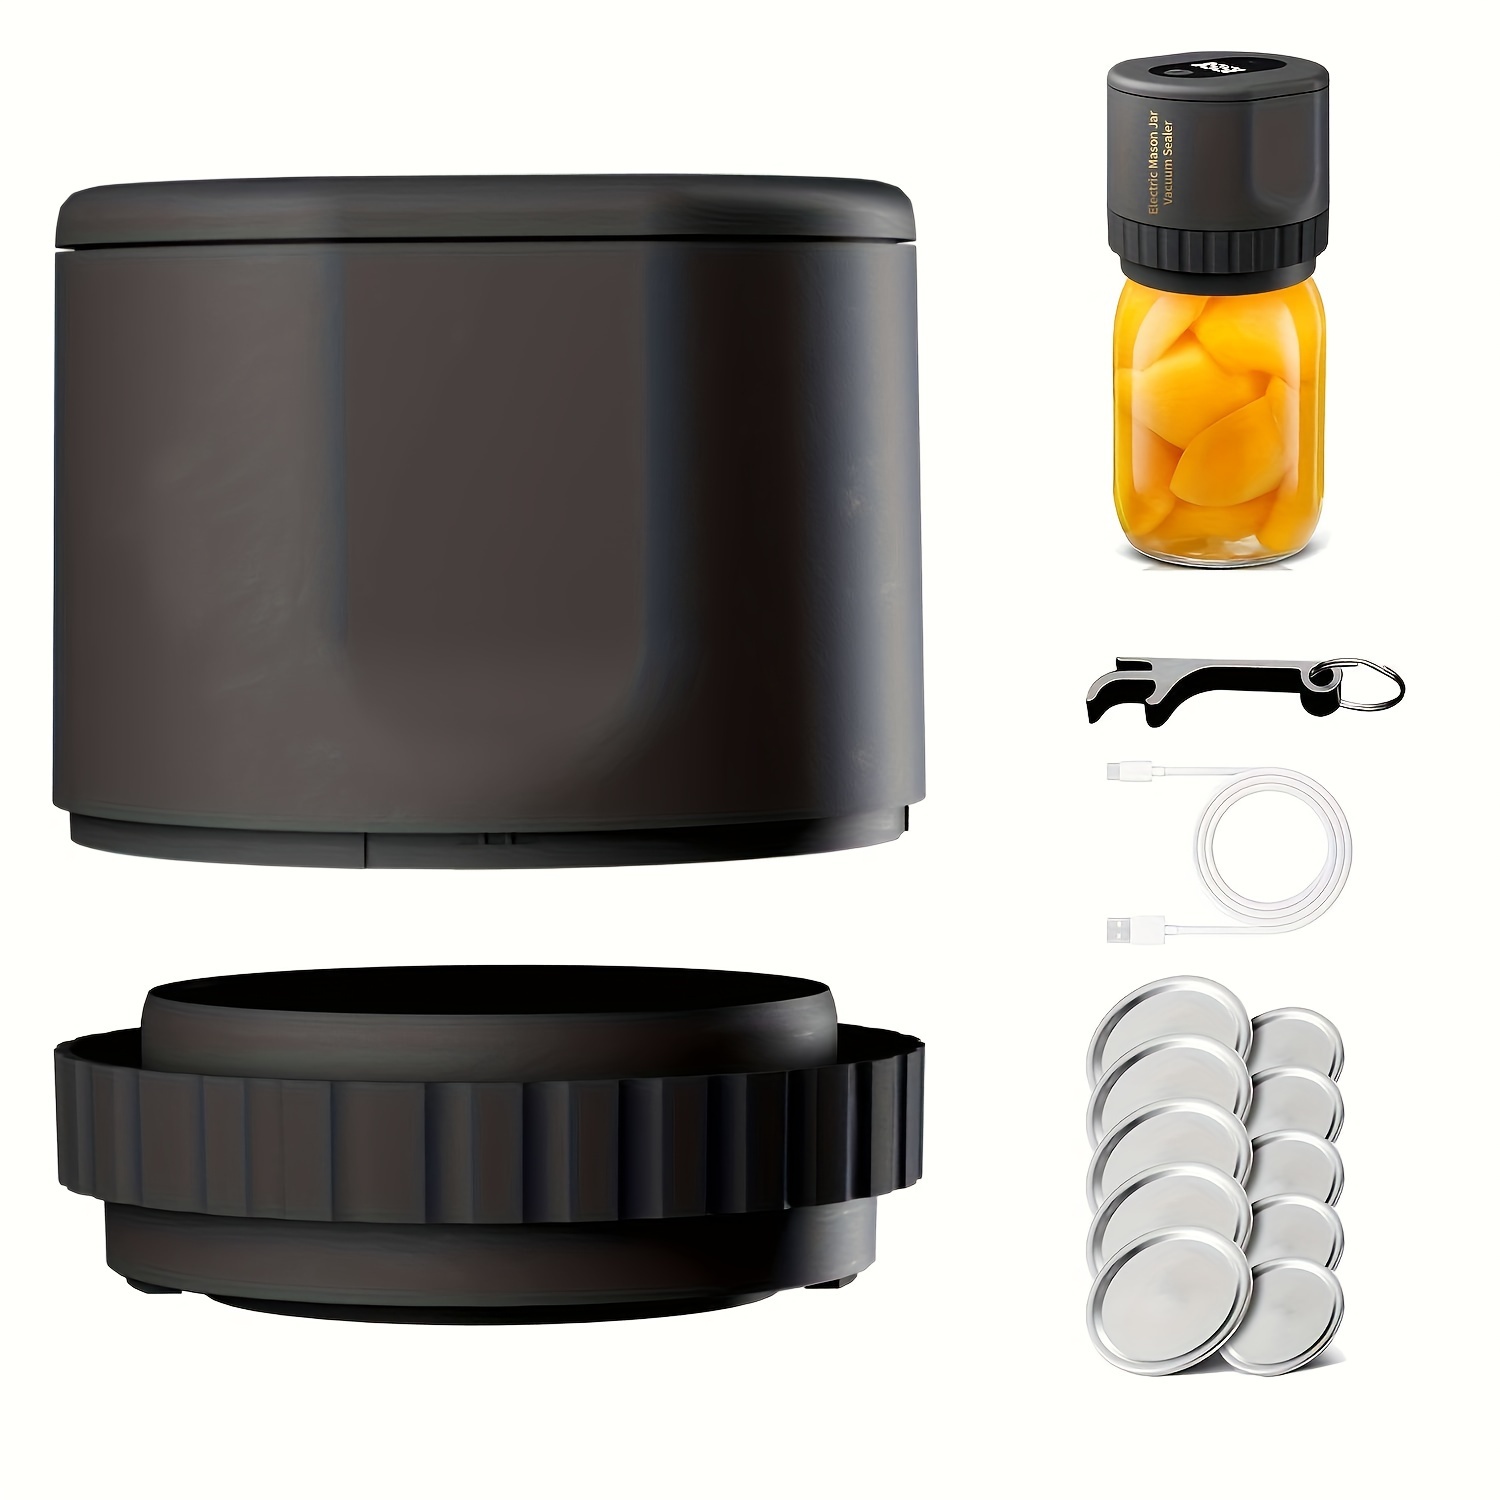 Electric Mason Jar Vacuum Sealer Vacuum Sealer For Canning - Temu